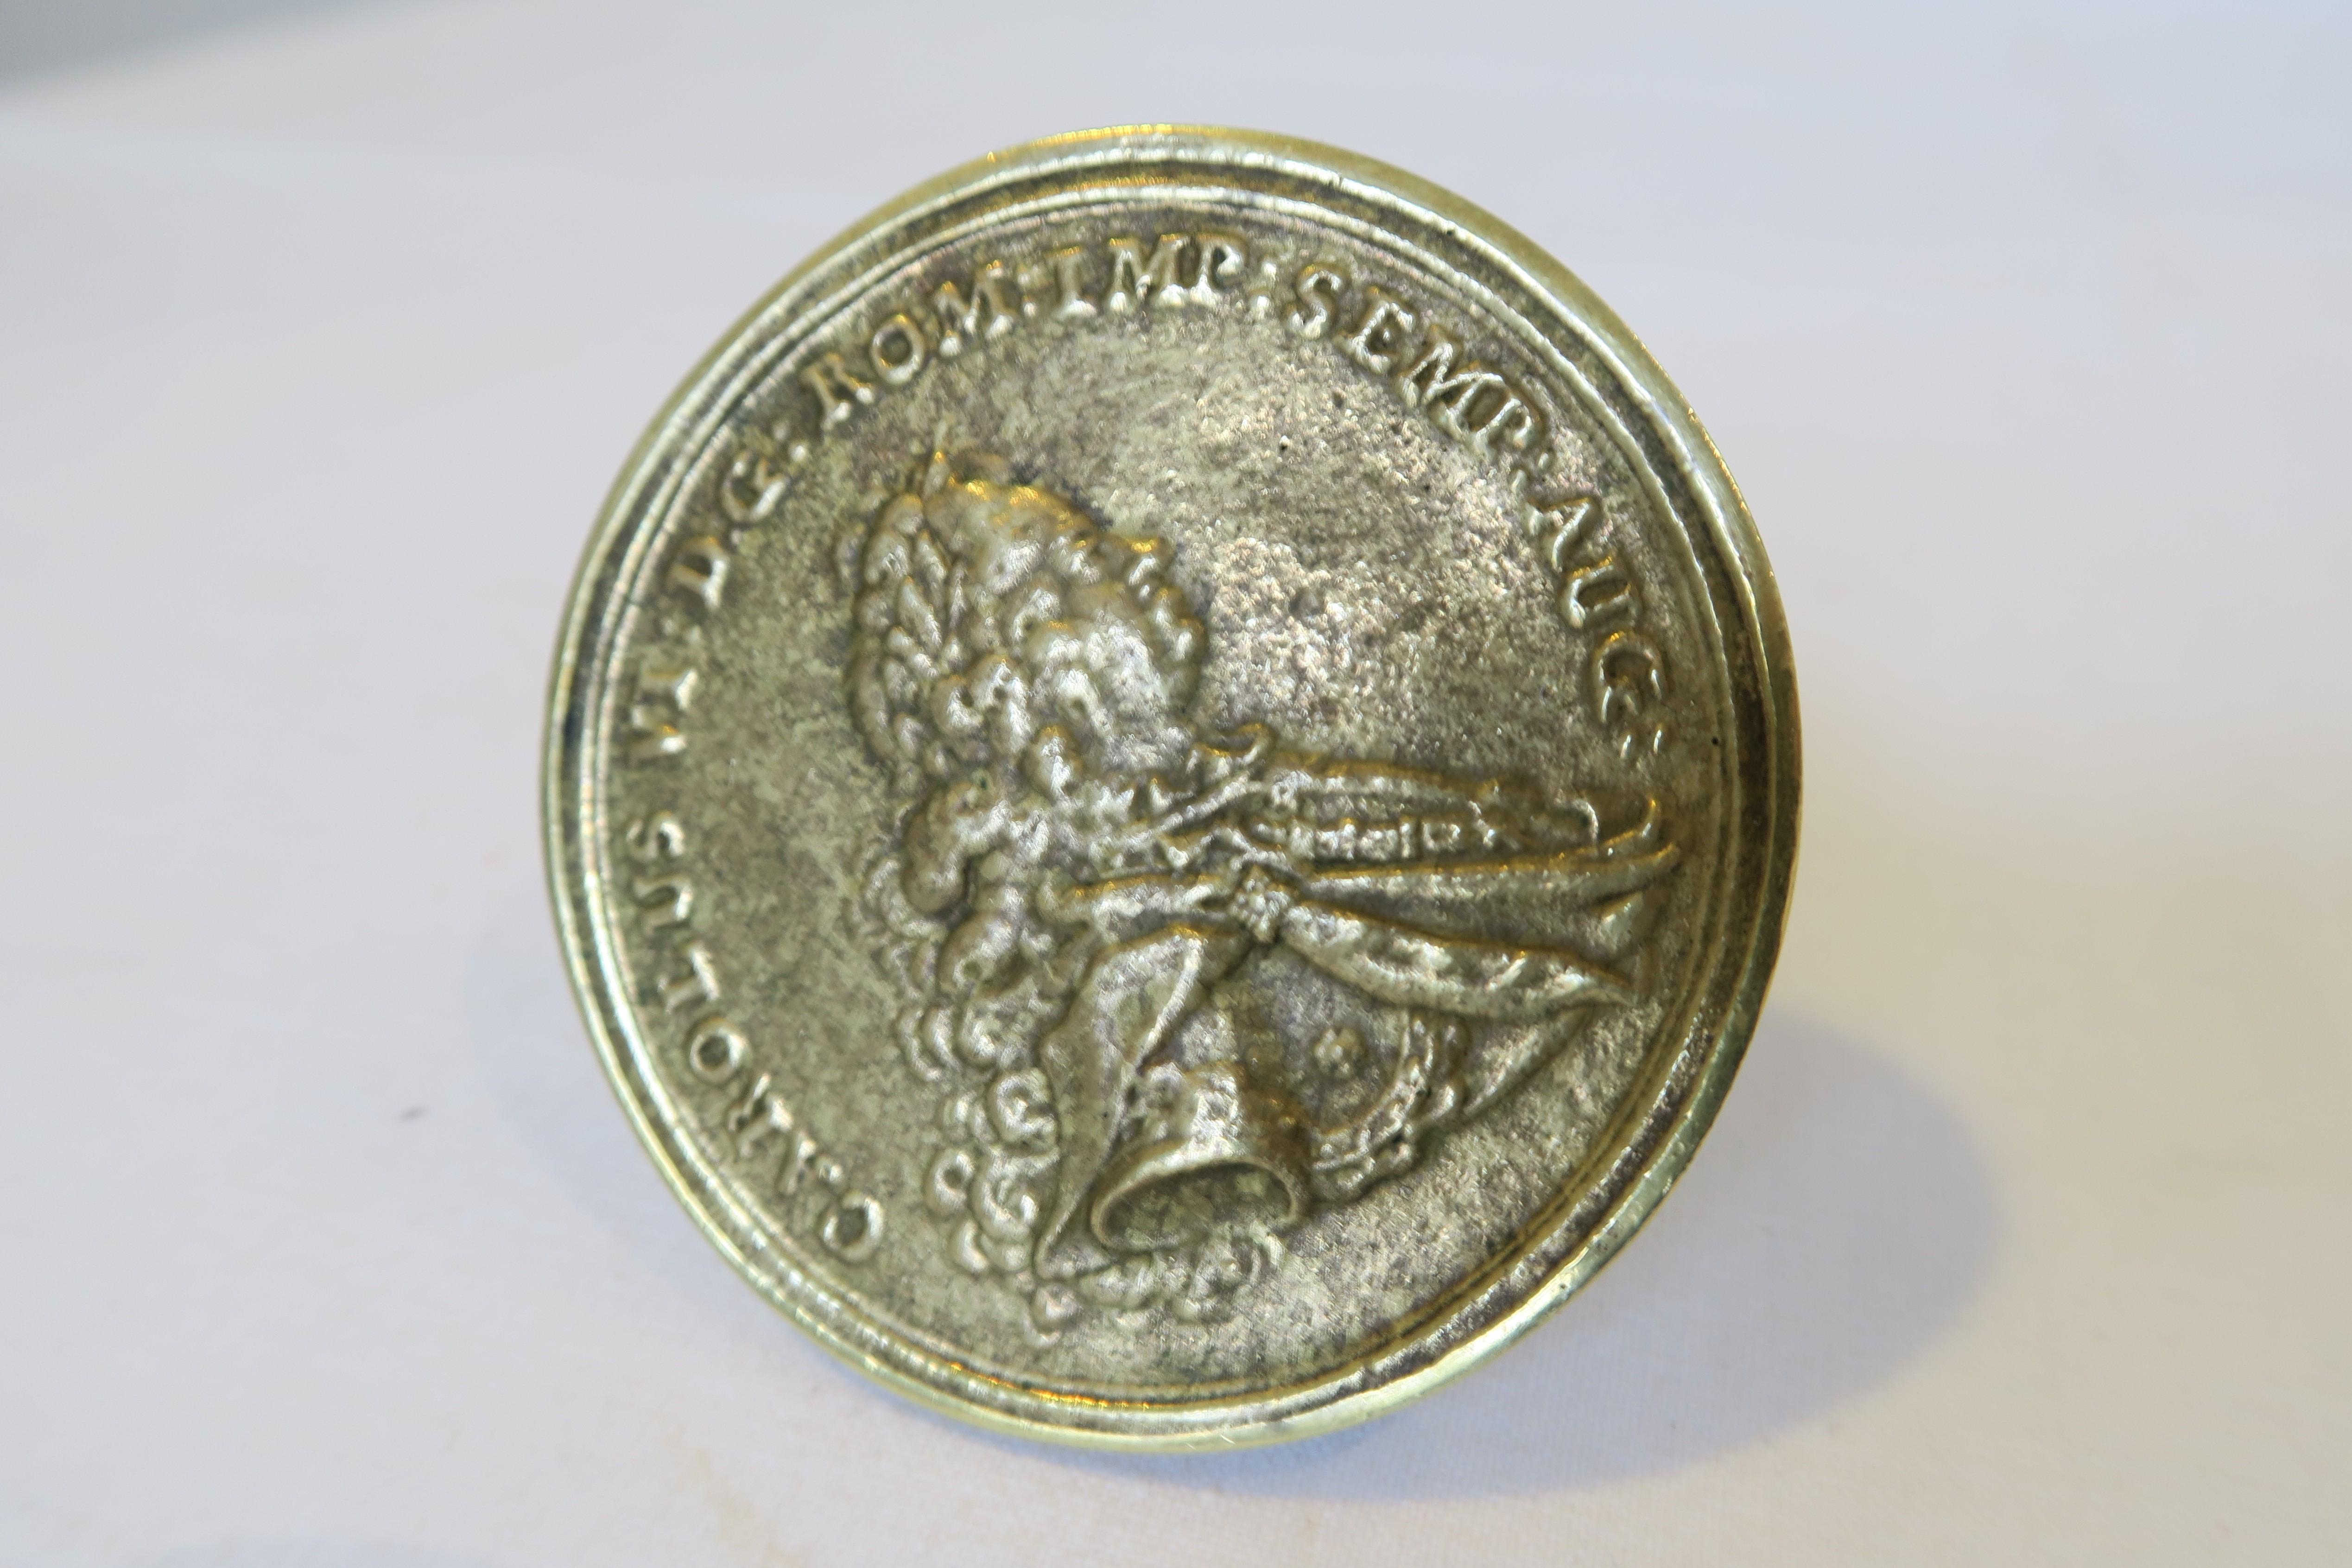 Mid-Century Modern Midcentury Auböck Bottle Stopper Historical Coin Motive For Sale